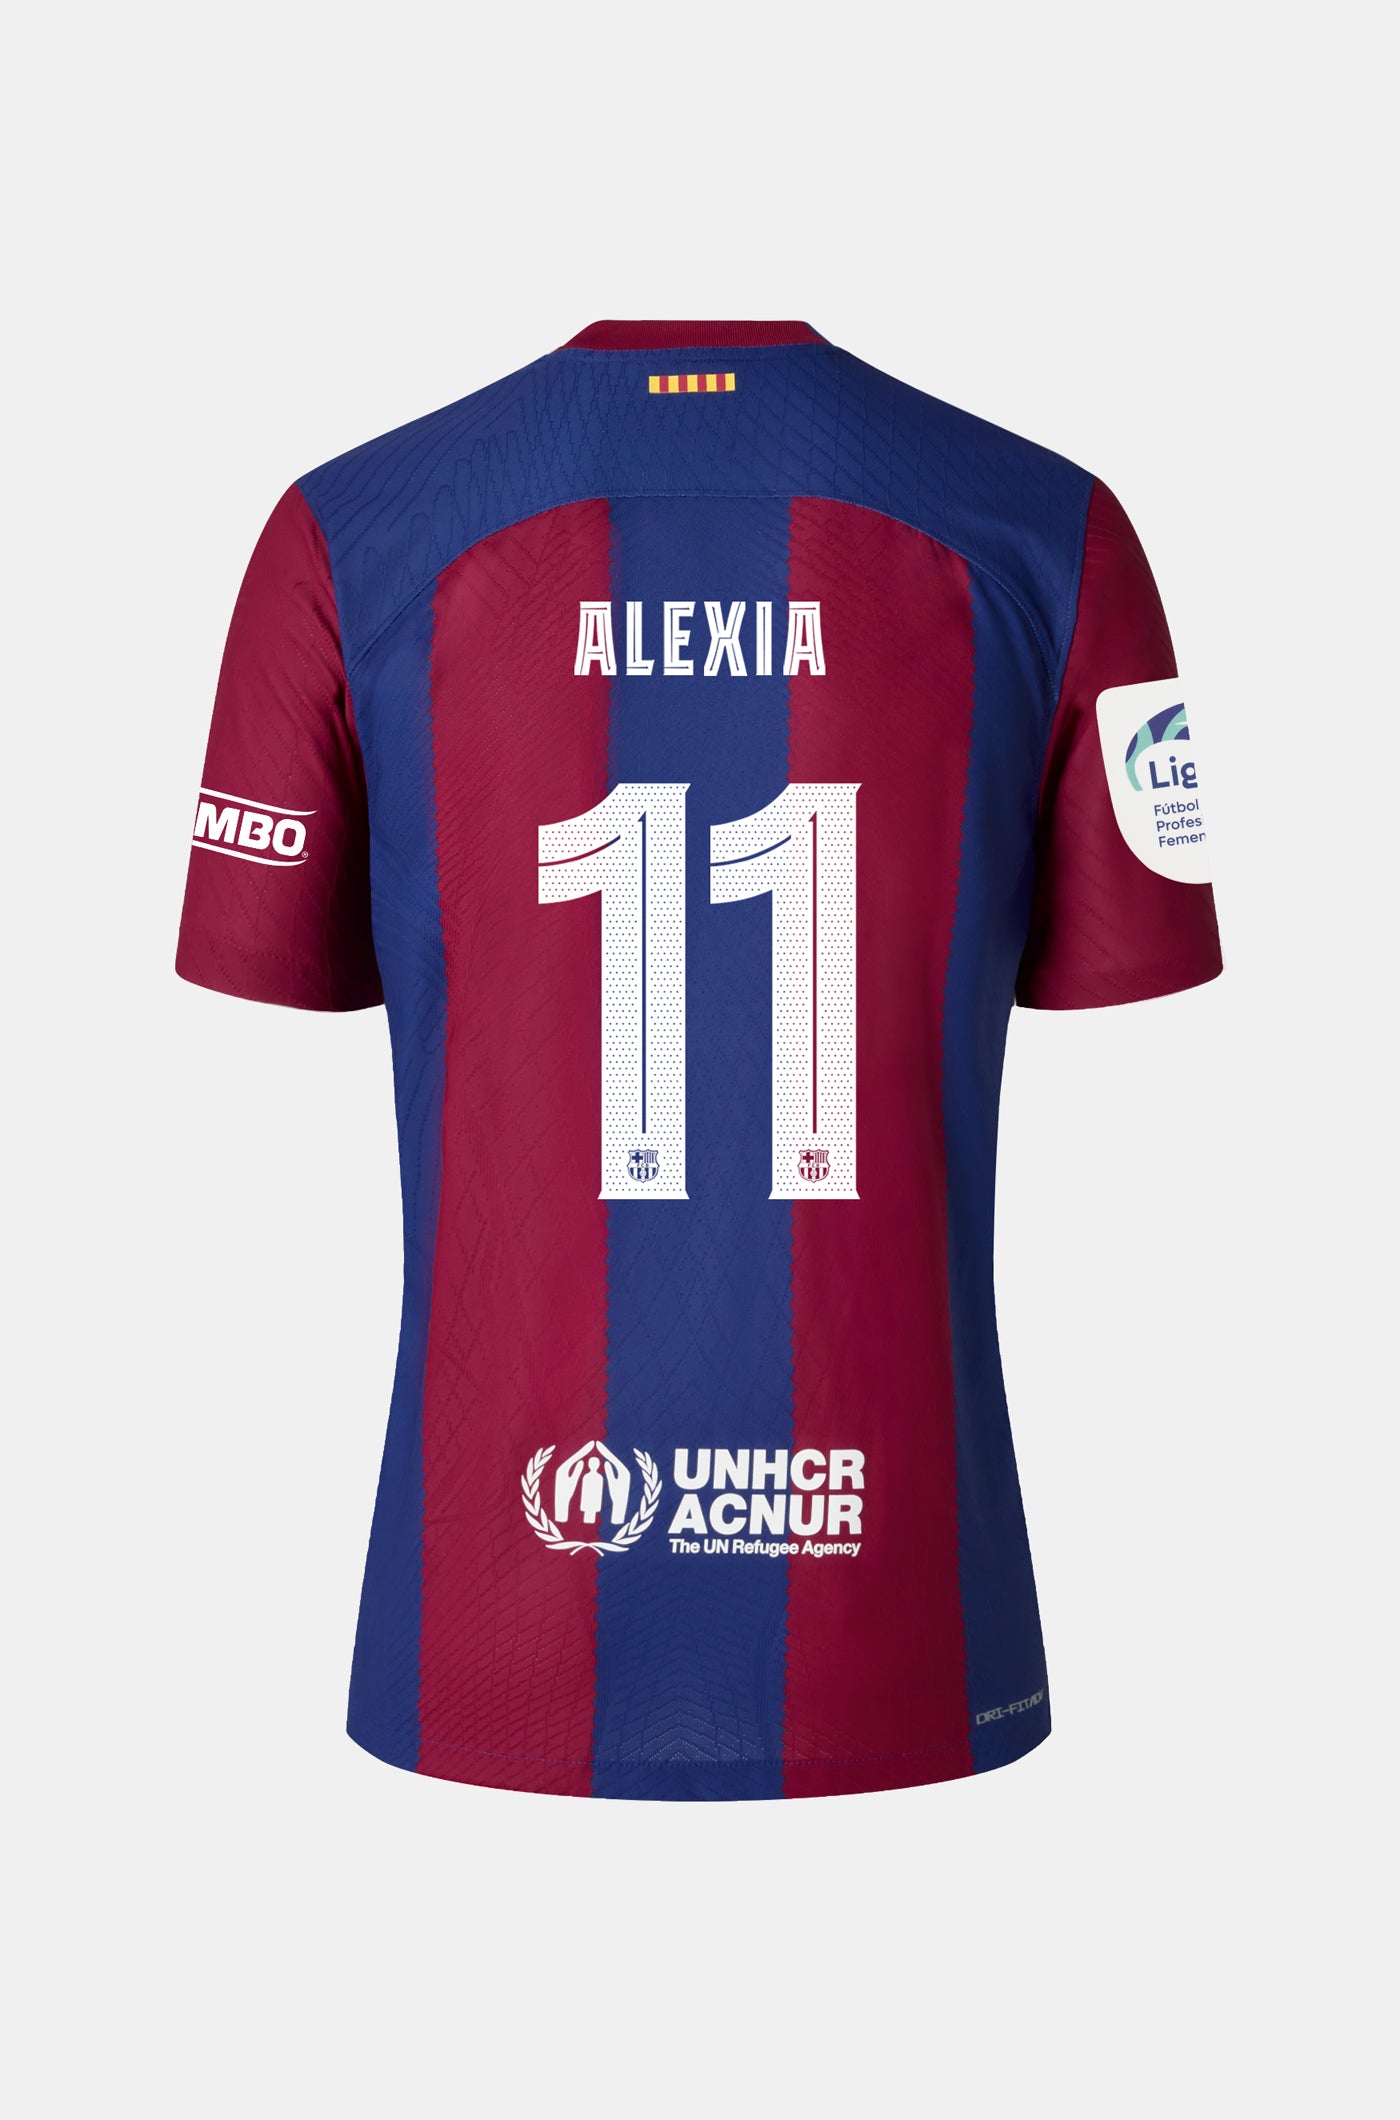 Liga F FC Barcelona Home Shirt 23/24 Player's Edition - Women - ALEXIA